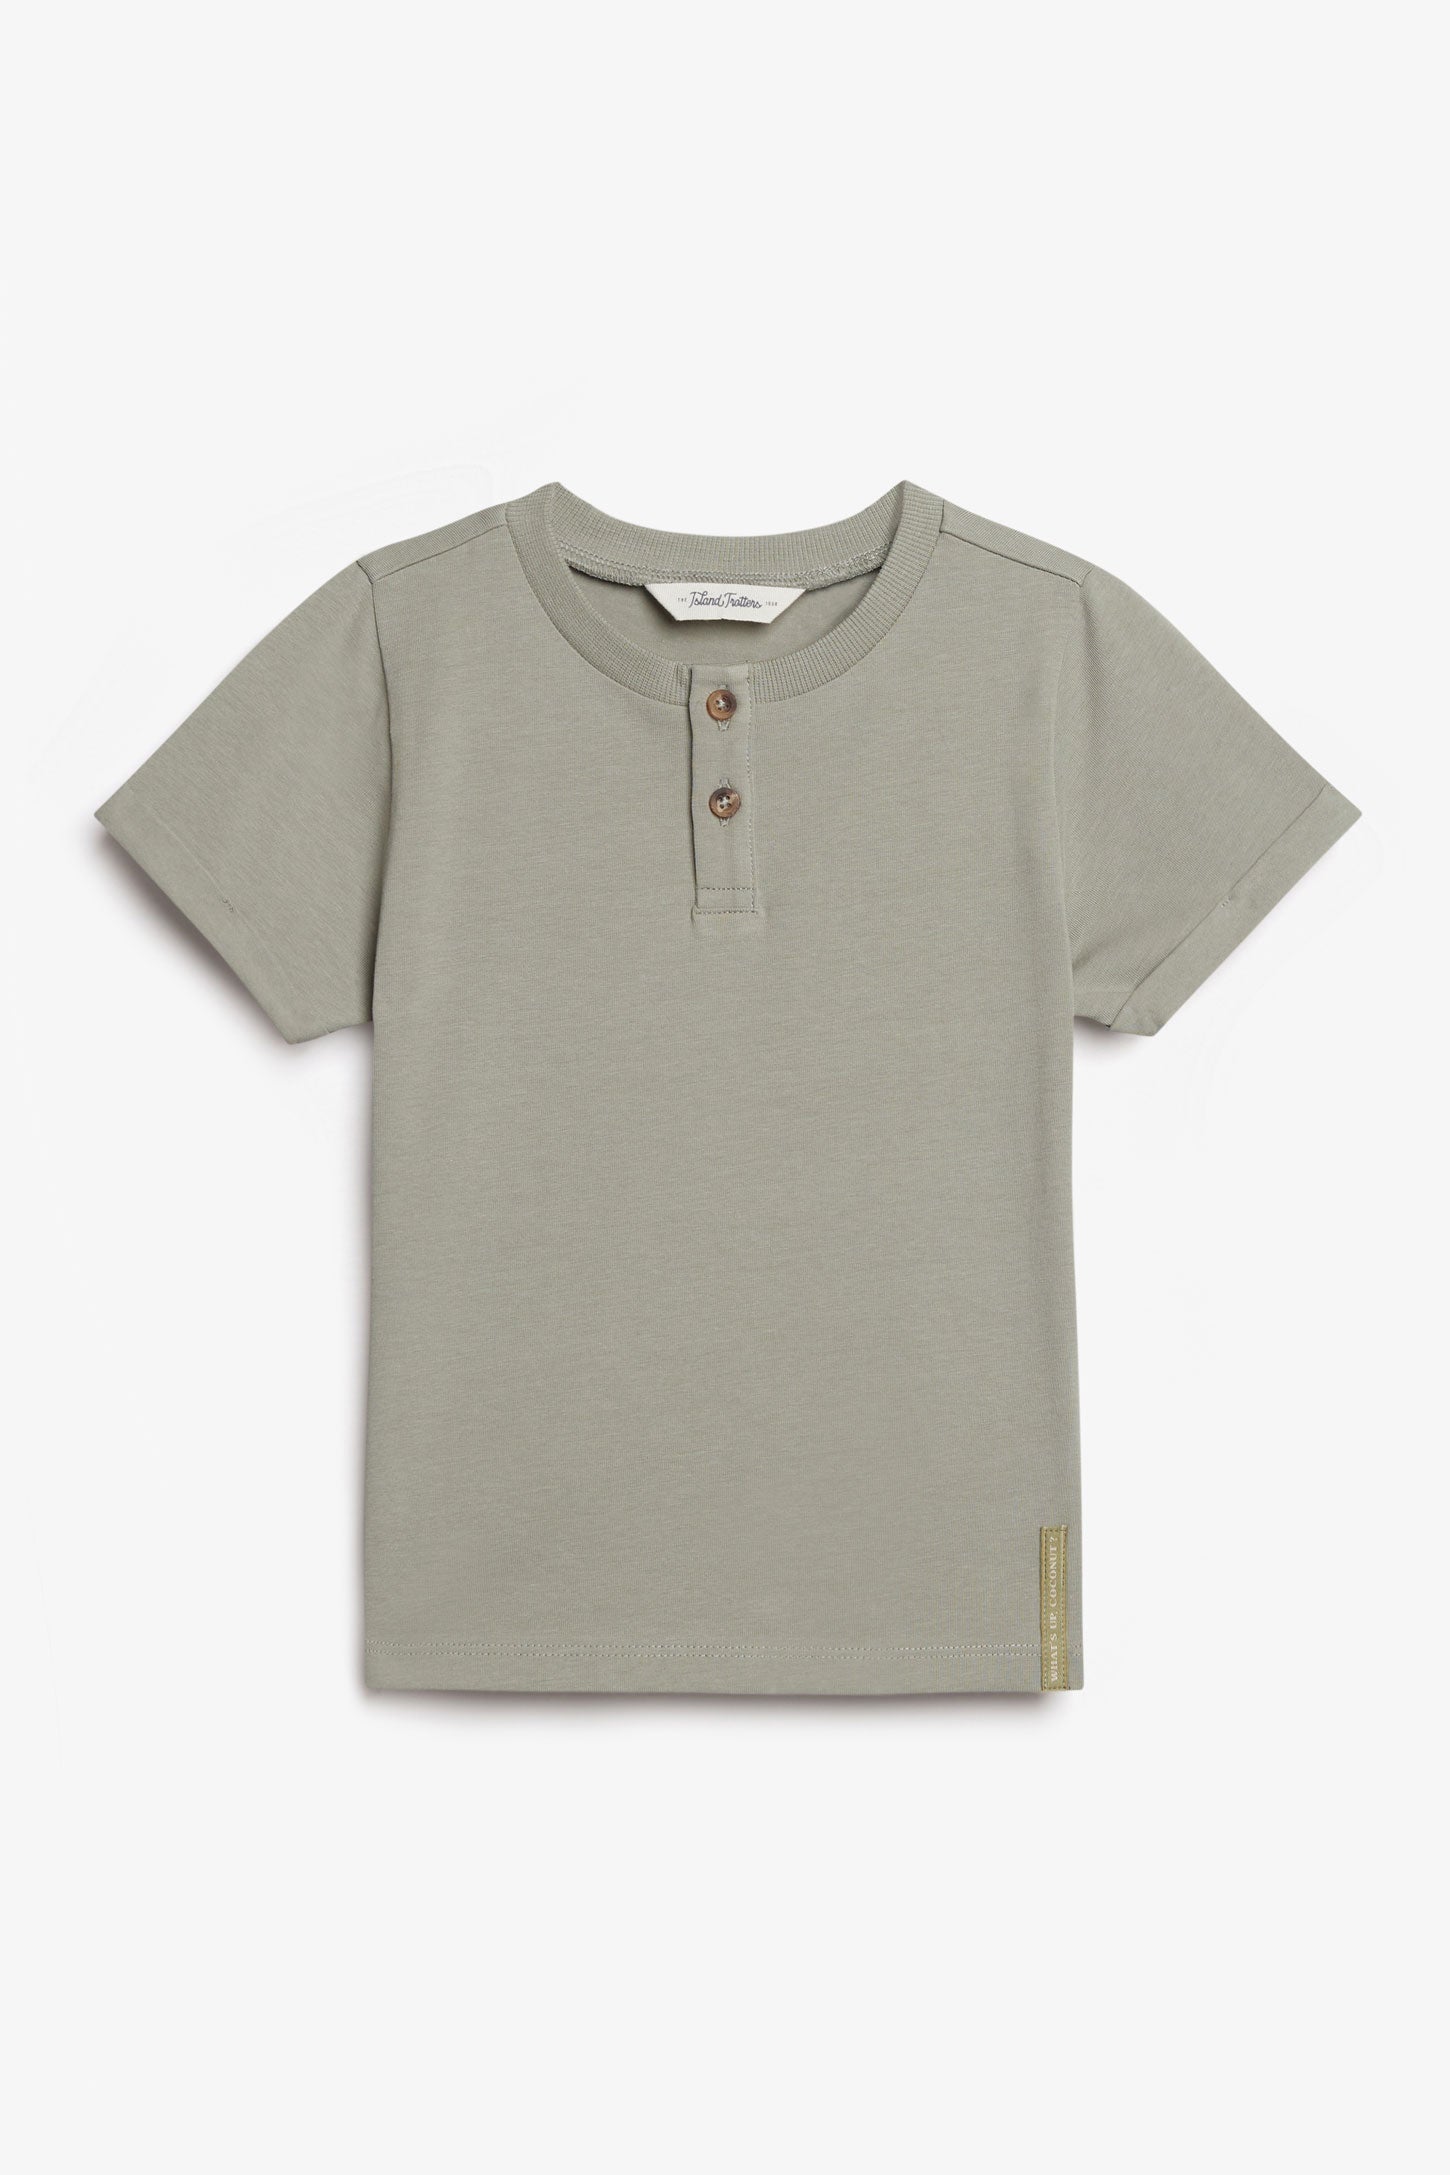 T-shirt henley en coton, 2T-3T - Bébé garçon && VERT